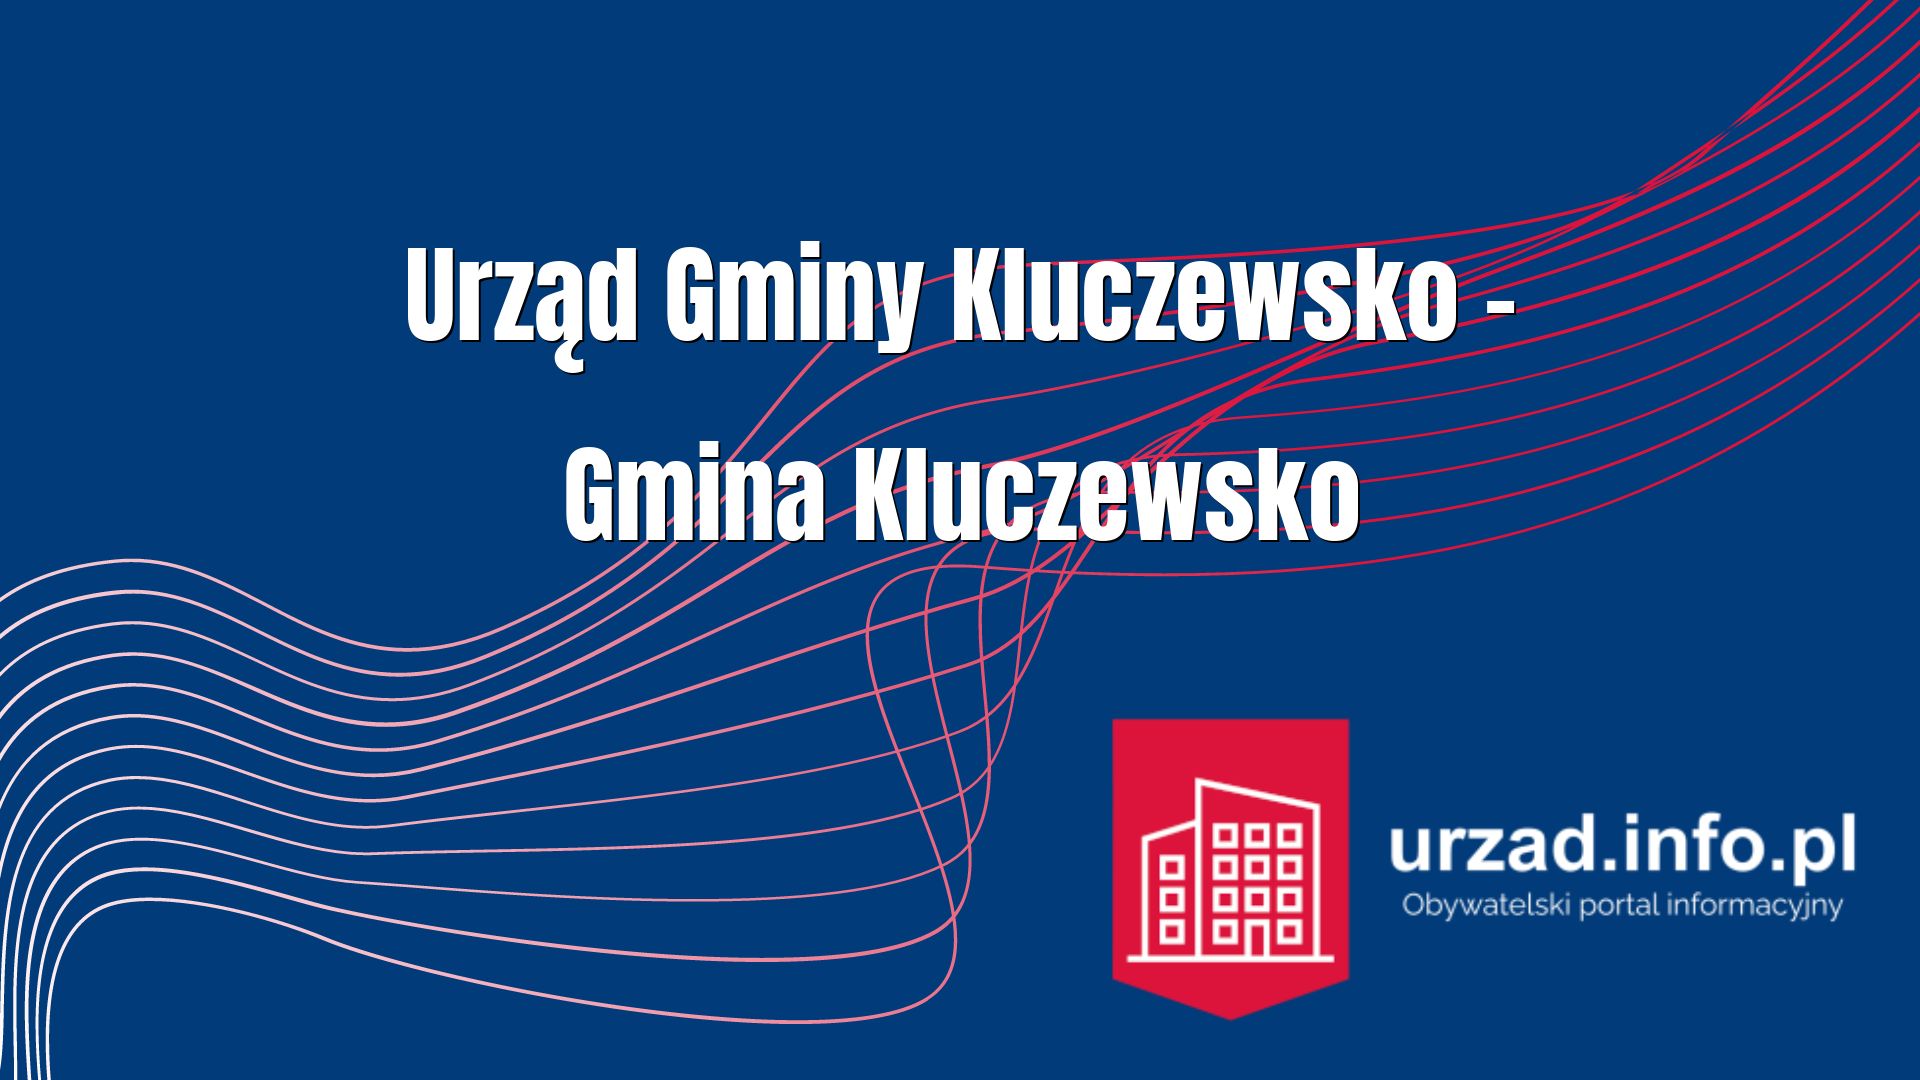 Urząd Gminy Kluczewsko – Gmina Kluczewsko